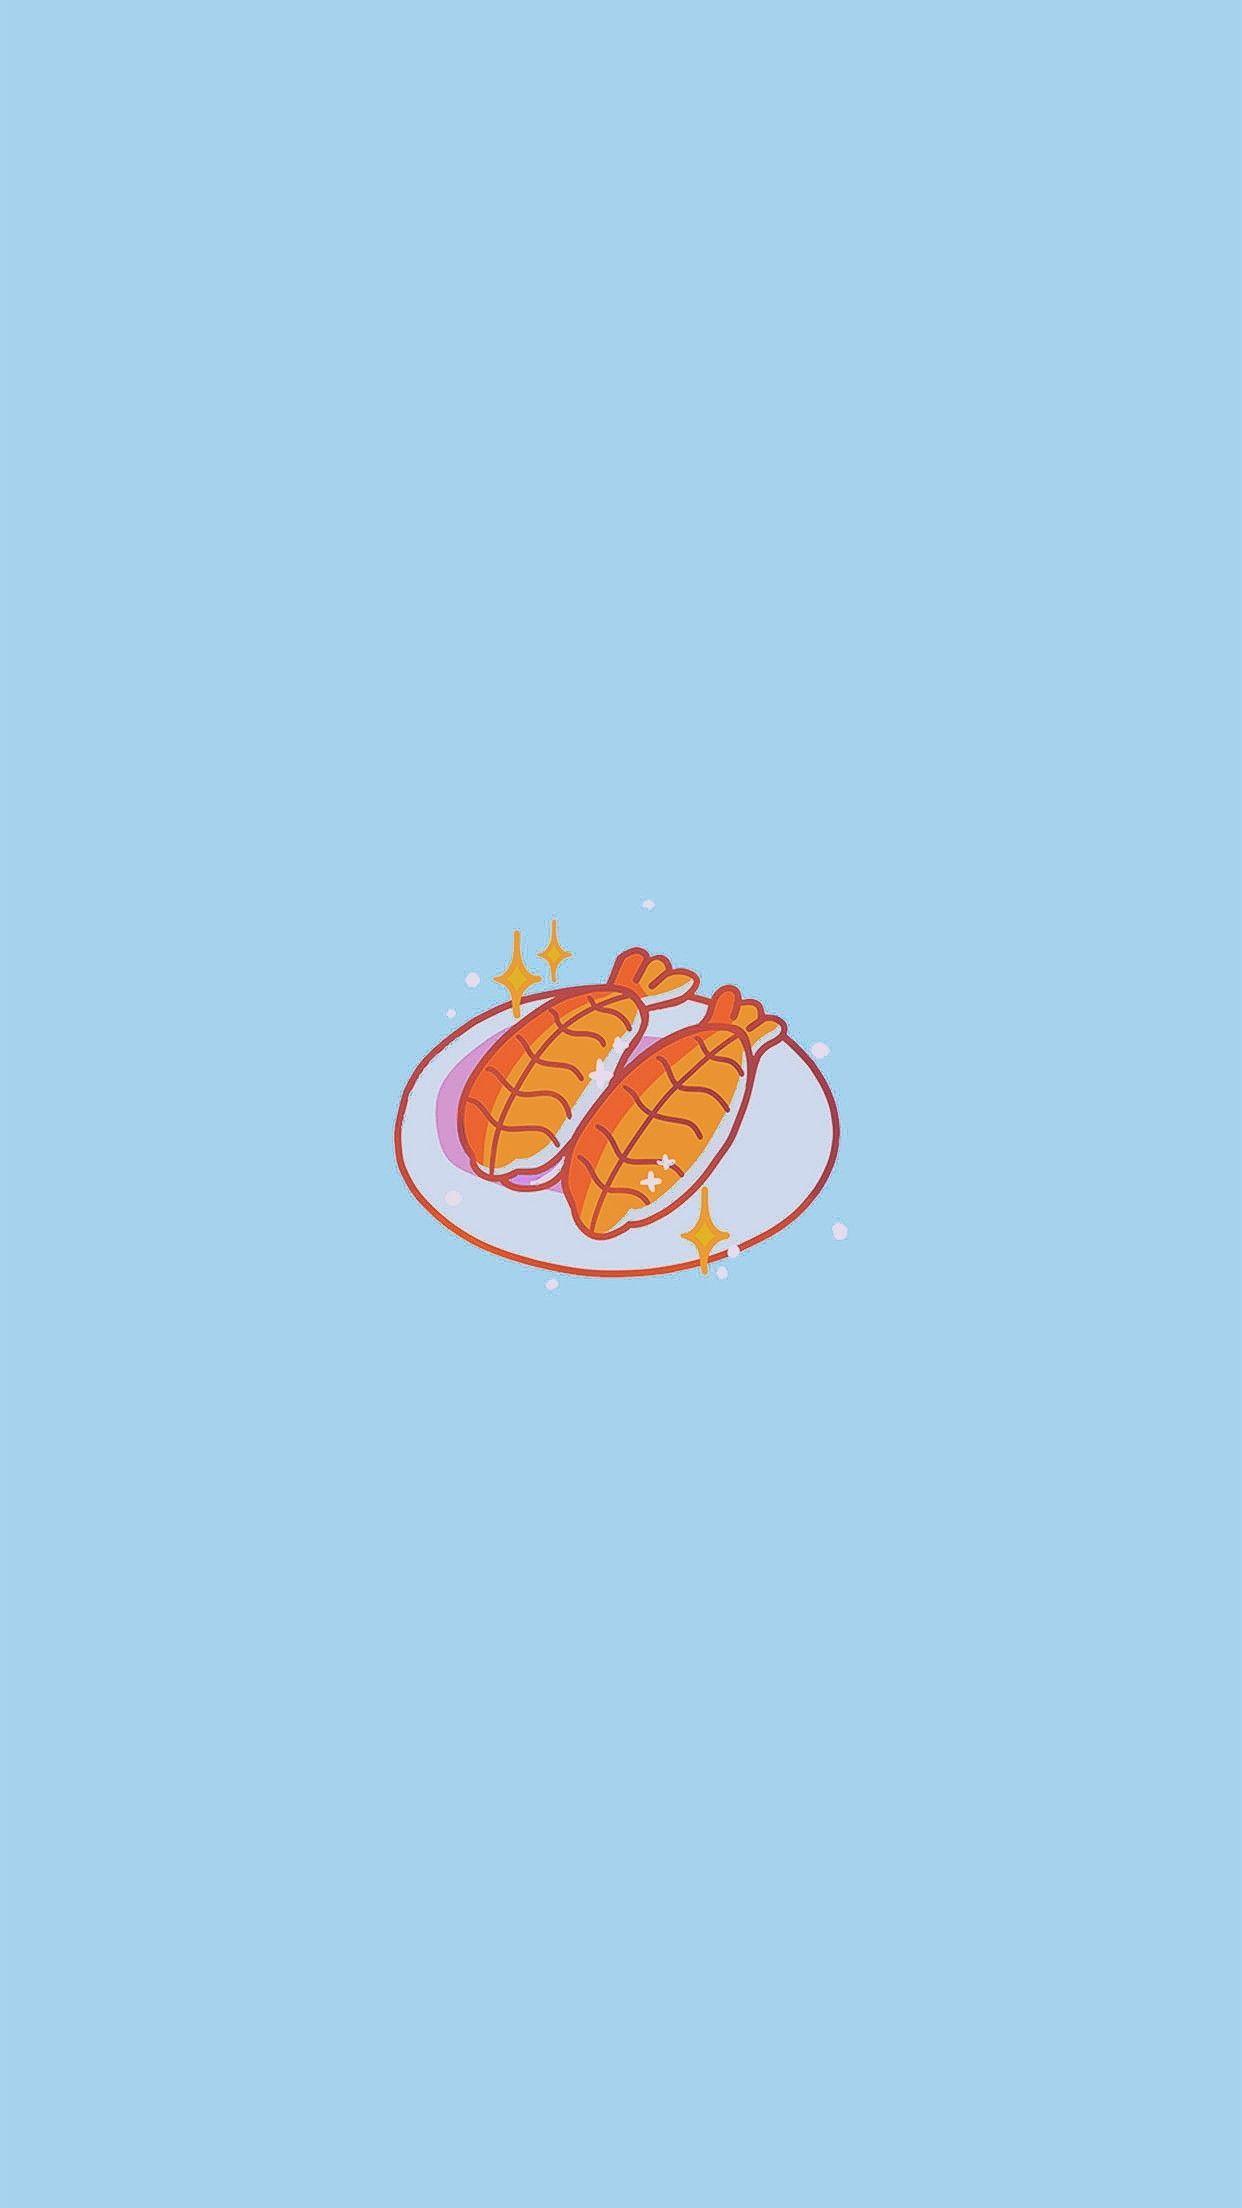 Cute Cartoon Sushi Wallpapers - Top Free Cute Cartoon Sushi Backgrounds ...